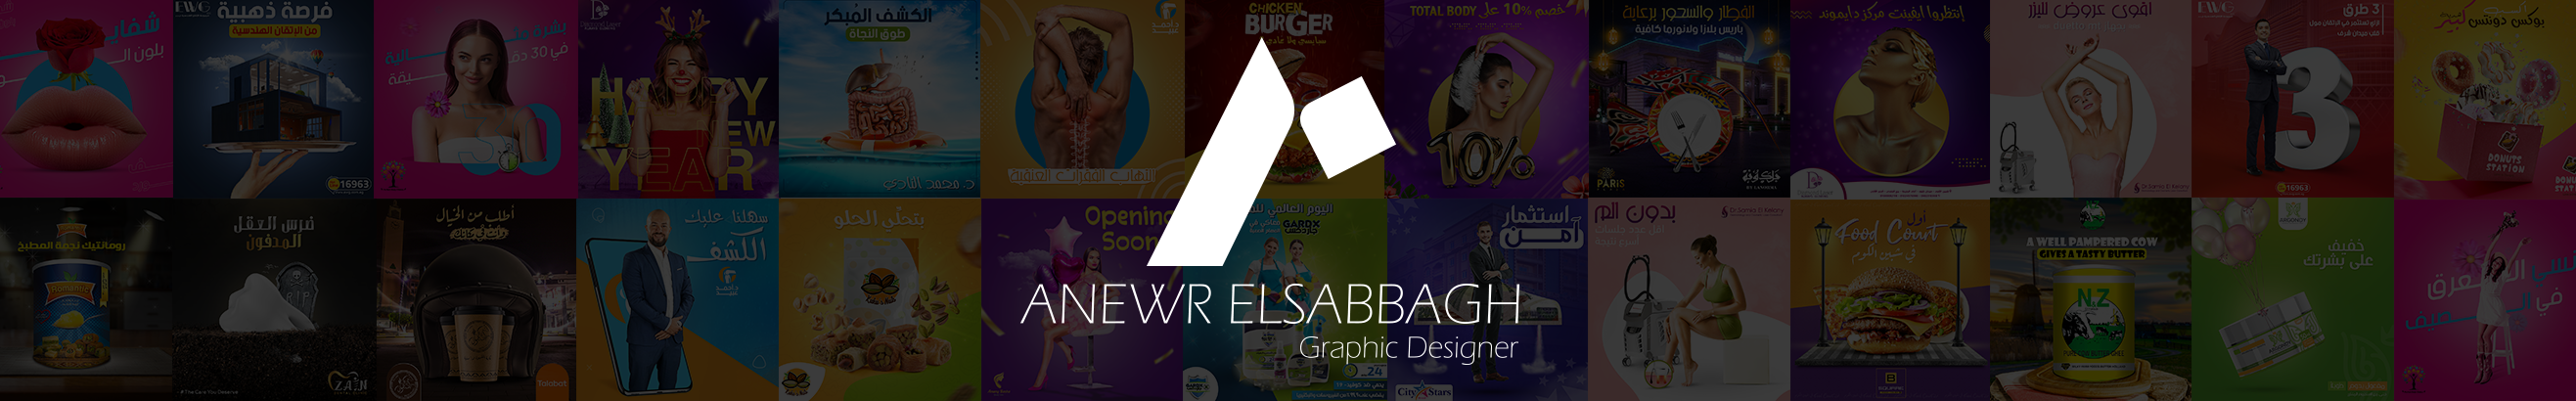 Anwer Elsabbagh ✪'s profile banner